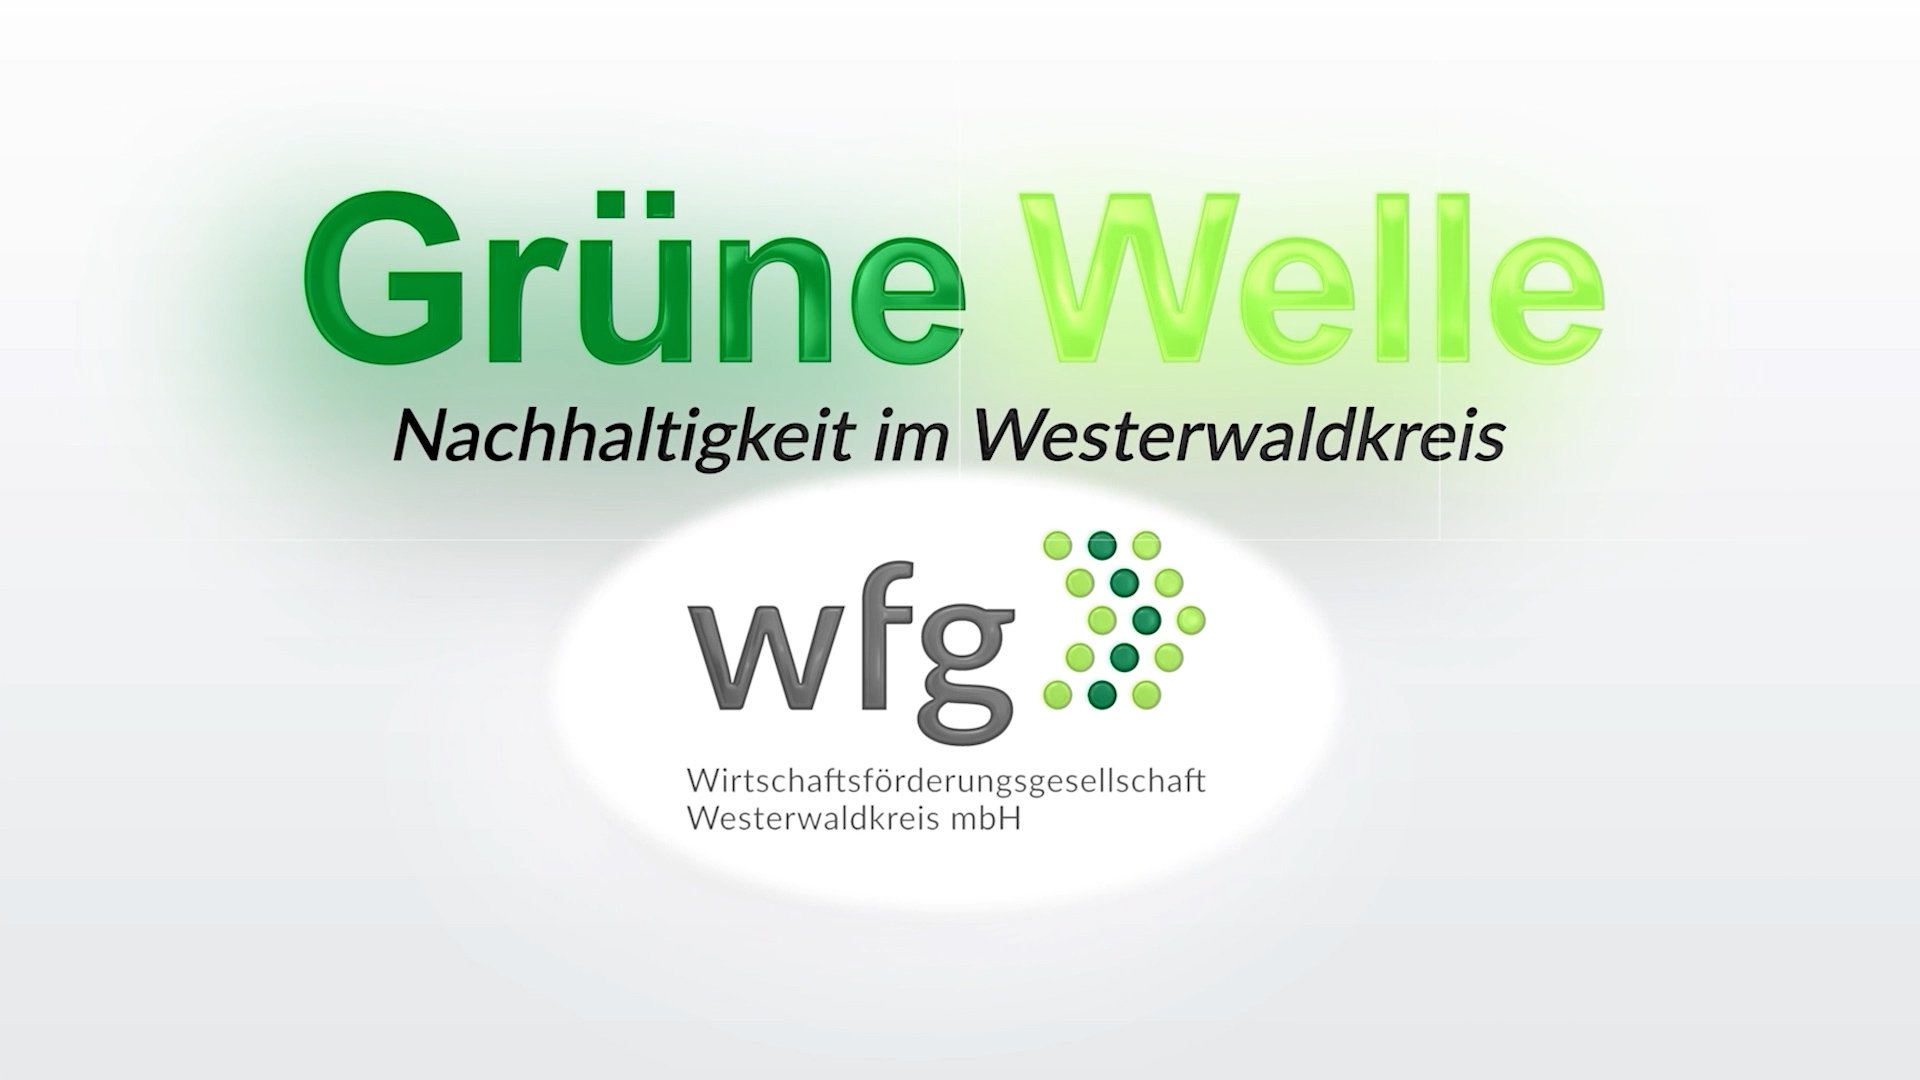 Grüne Welle – Nachhaltigkeit im Westerwaldkreis